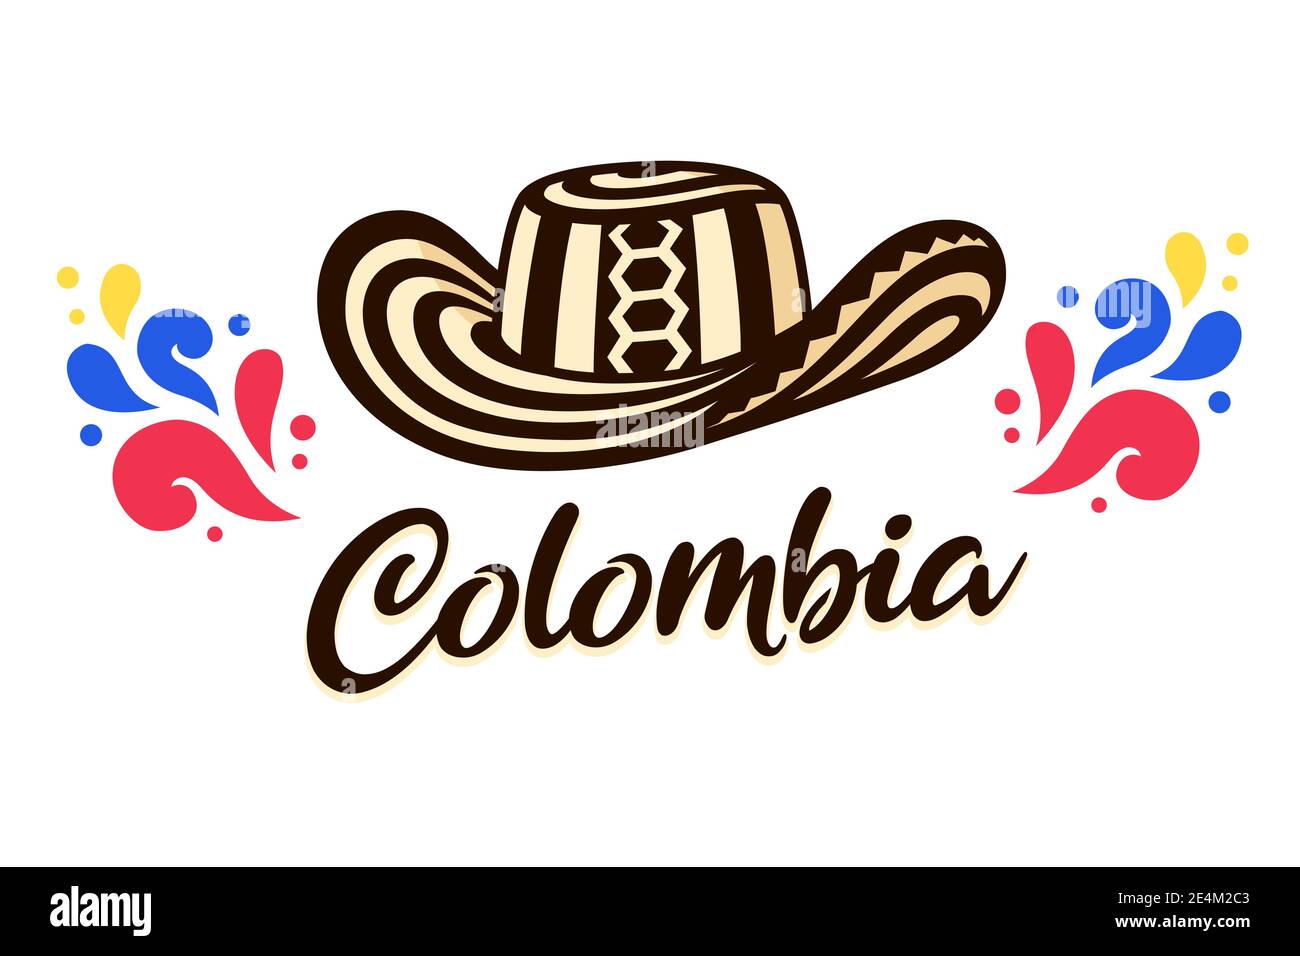 Sombrero Vueltiao, cappello tradizionale colombiano con scritta Colombia. Immagine vettoriale clip art. Illustrazione Vettoriale